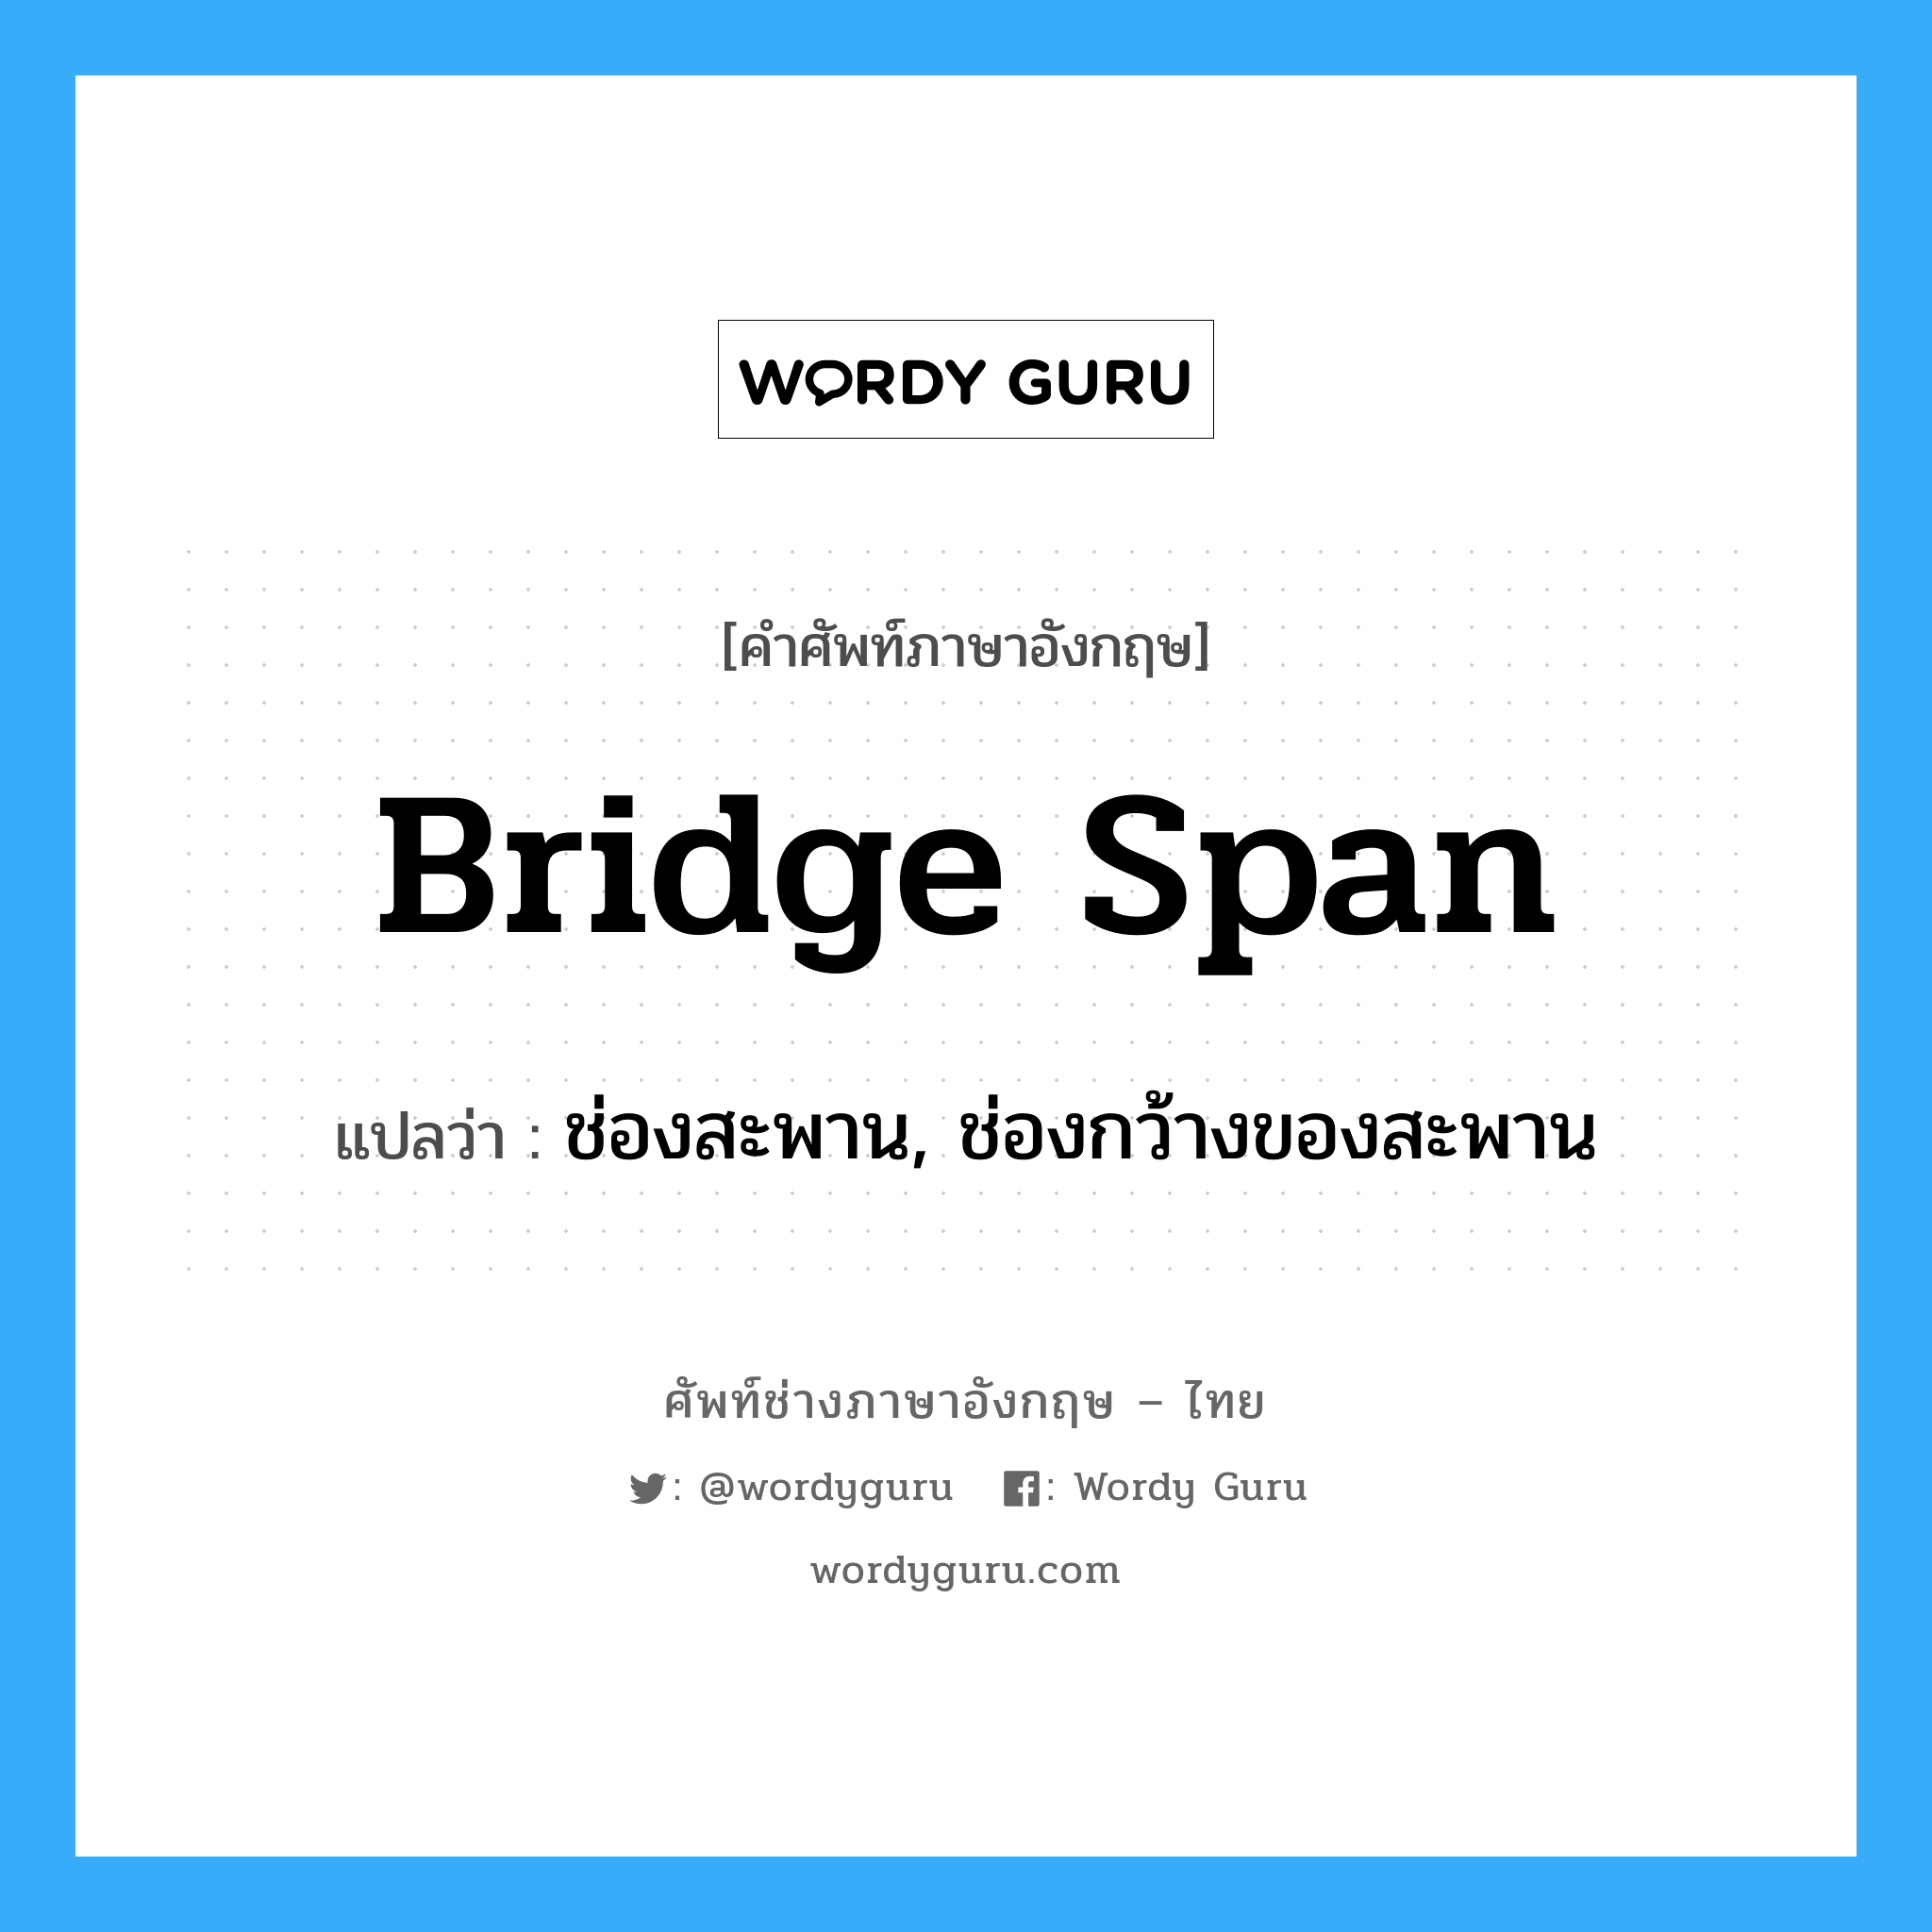 ช่องสะพาน, ช่องกว้างของสะพาน ภาษาอังกฤษ?, คำศัพท์ช่างภาษาอังกฤษ - ไทย ช่องสะพาน, ช่องกว้างของสะพาน คำศัพท์ภาษาอังกฤษ ช่องสะพาน, ช่องกว้างของสะพาน แปลว่า bridge span